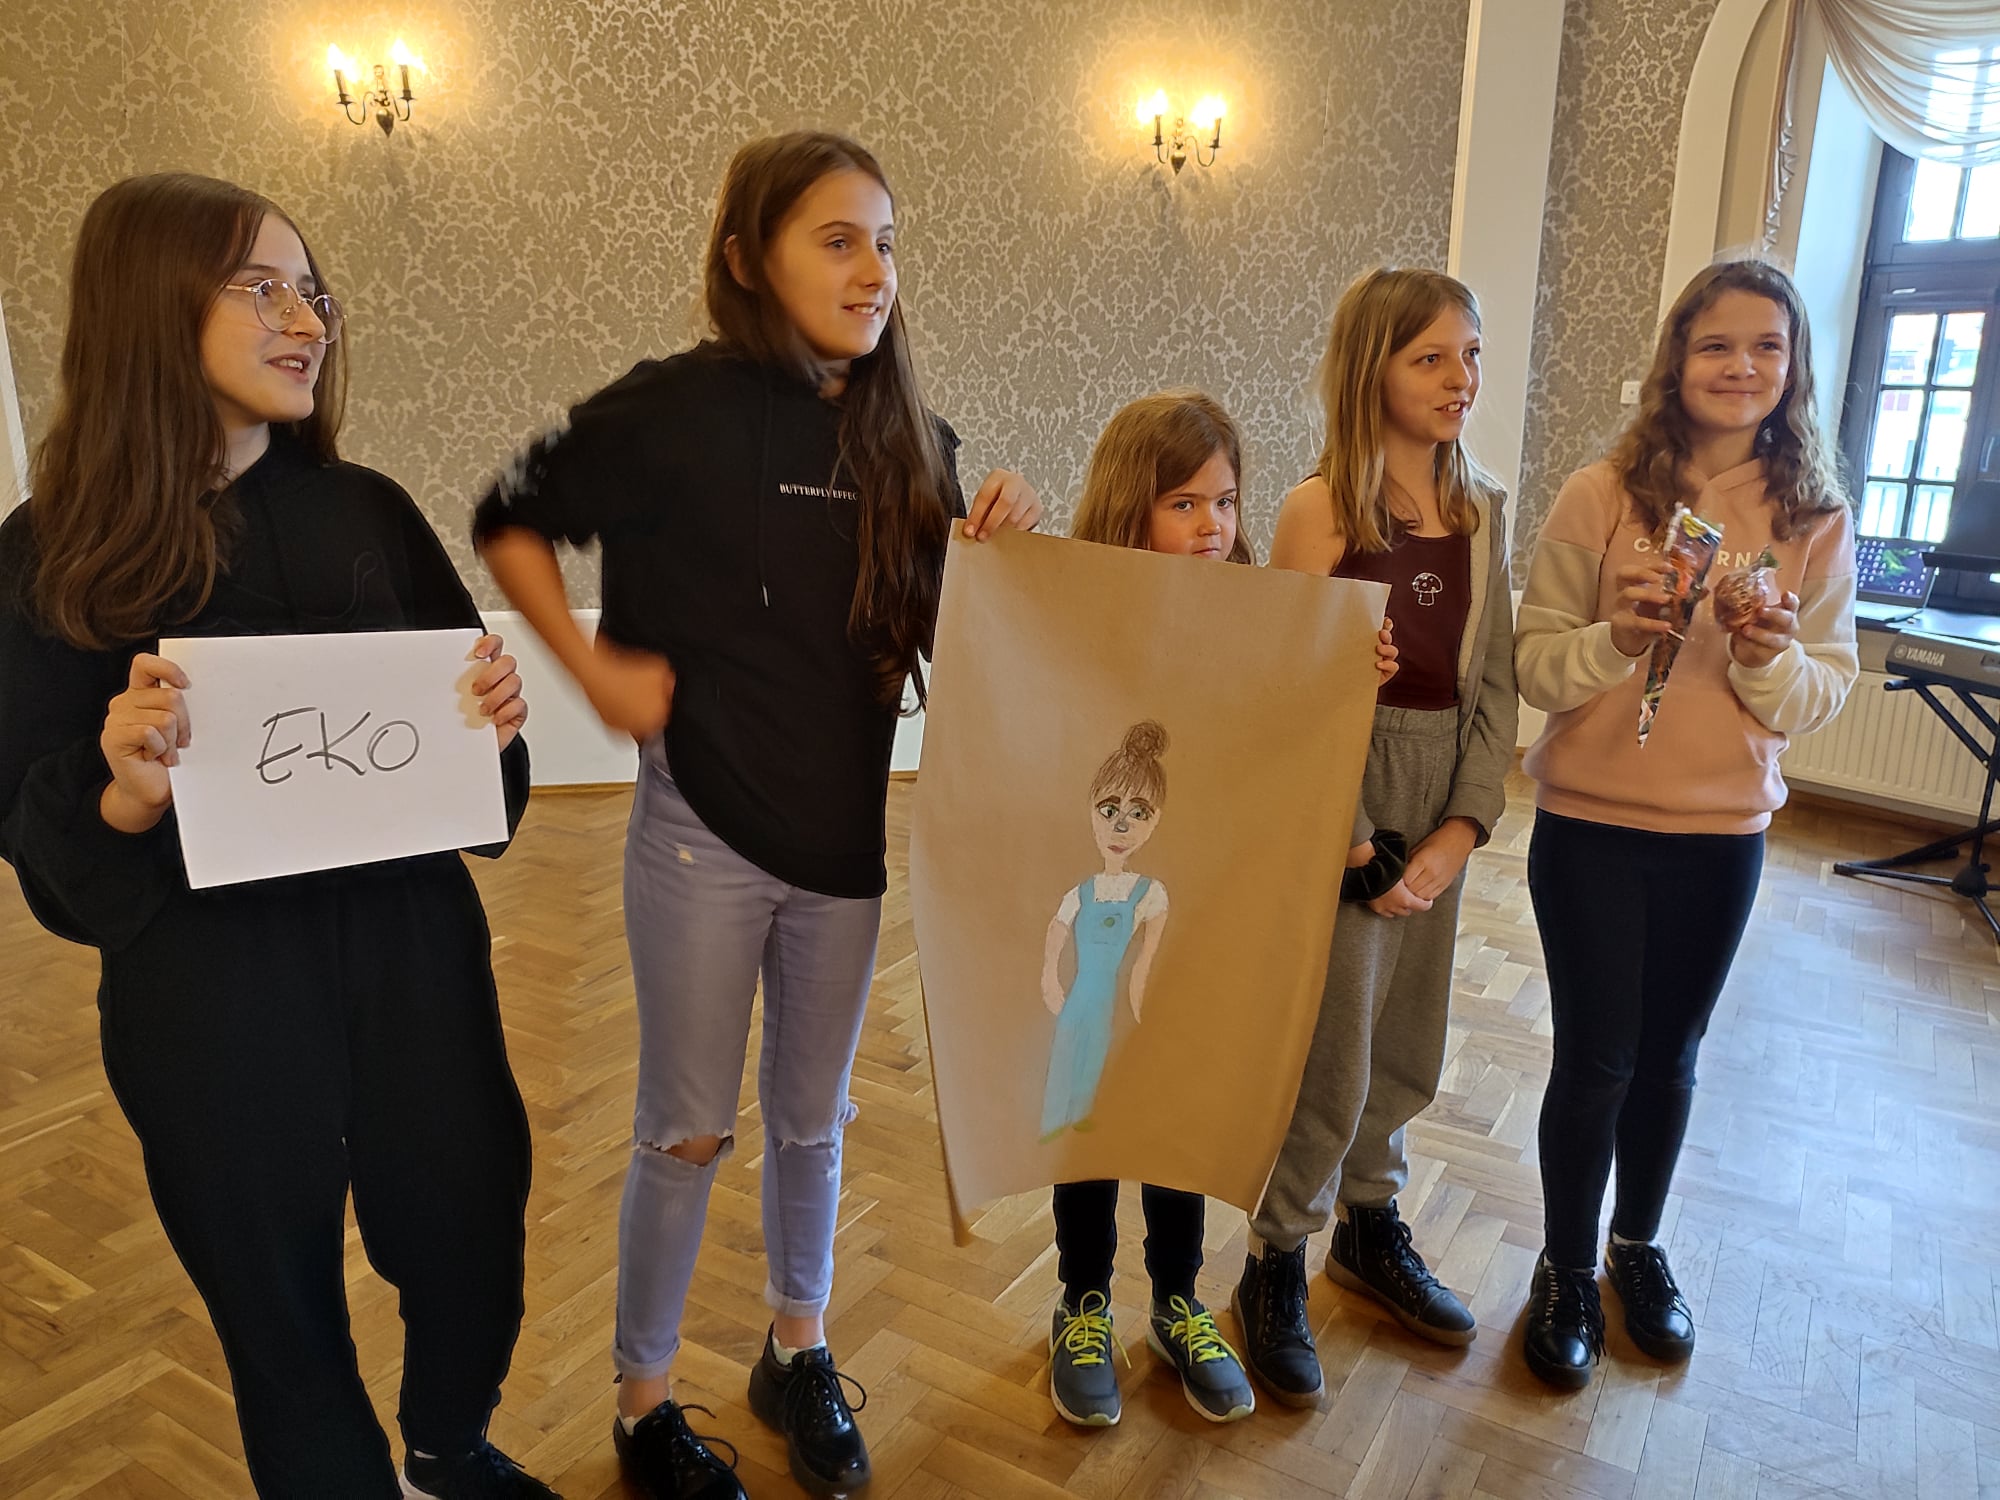 Pięć dziewczynek prezentuje swój plakat, z postacią w niebieskiej sukience. Jedna osoba trzyma kartkę z napisem eko